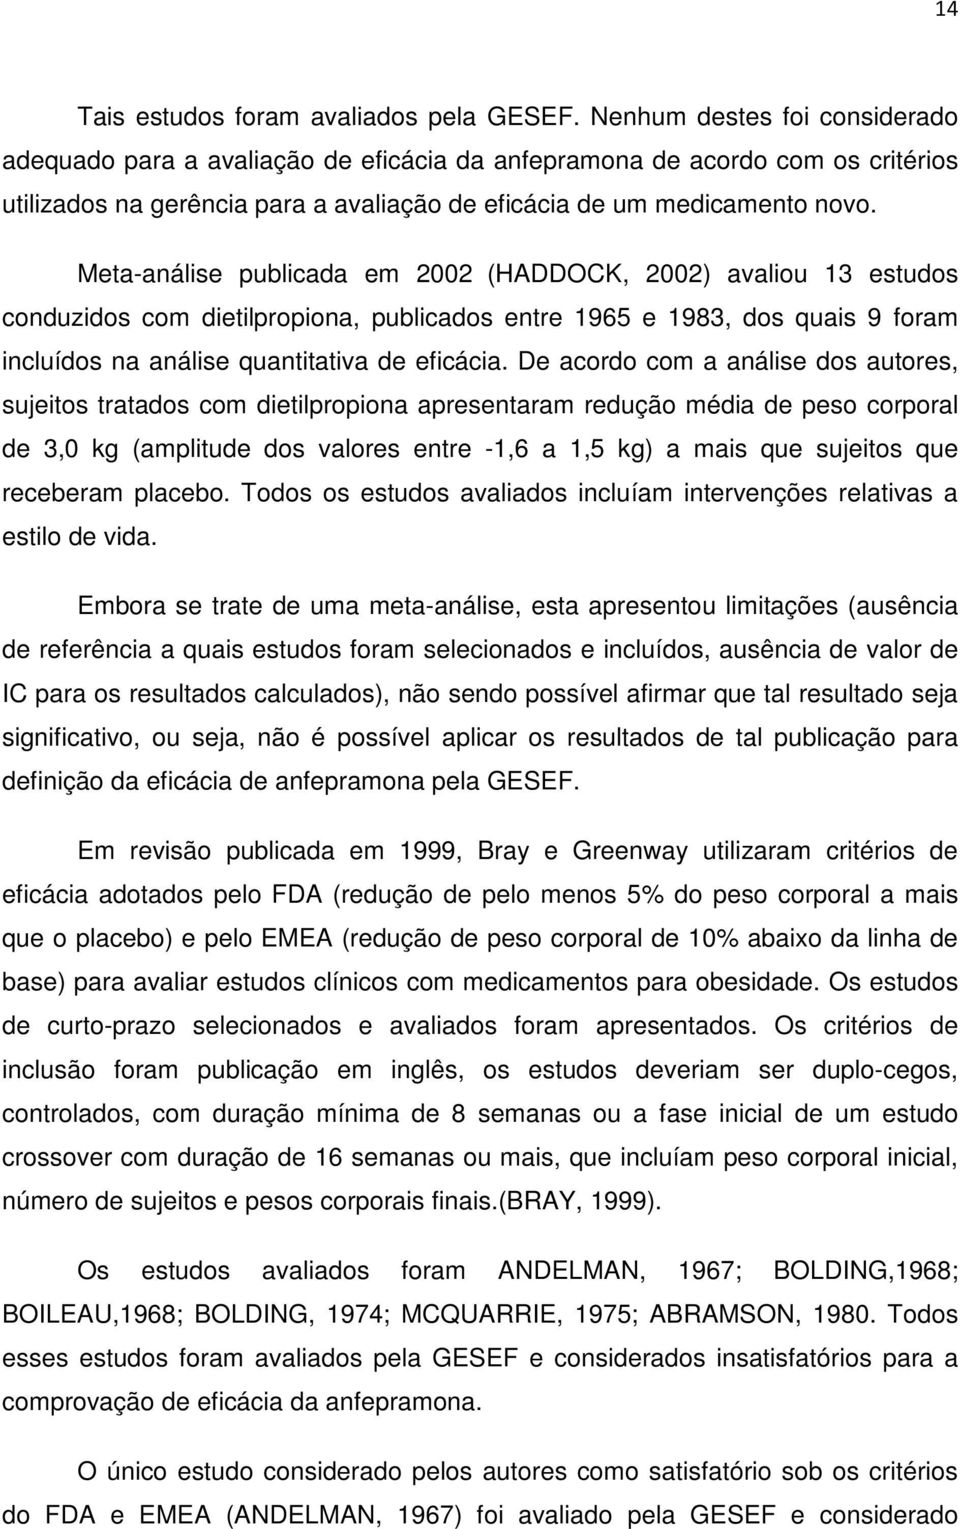 Meta-análise publicada em 2002 (HADDOCK, 2002) avaliou 13 estudos conduzidos com dietilpropiona, publicados entre 1965 e 1983, dos quais 9 foram incluídos na análise quantitativa de eficácia.